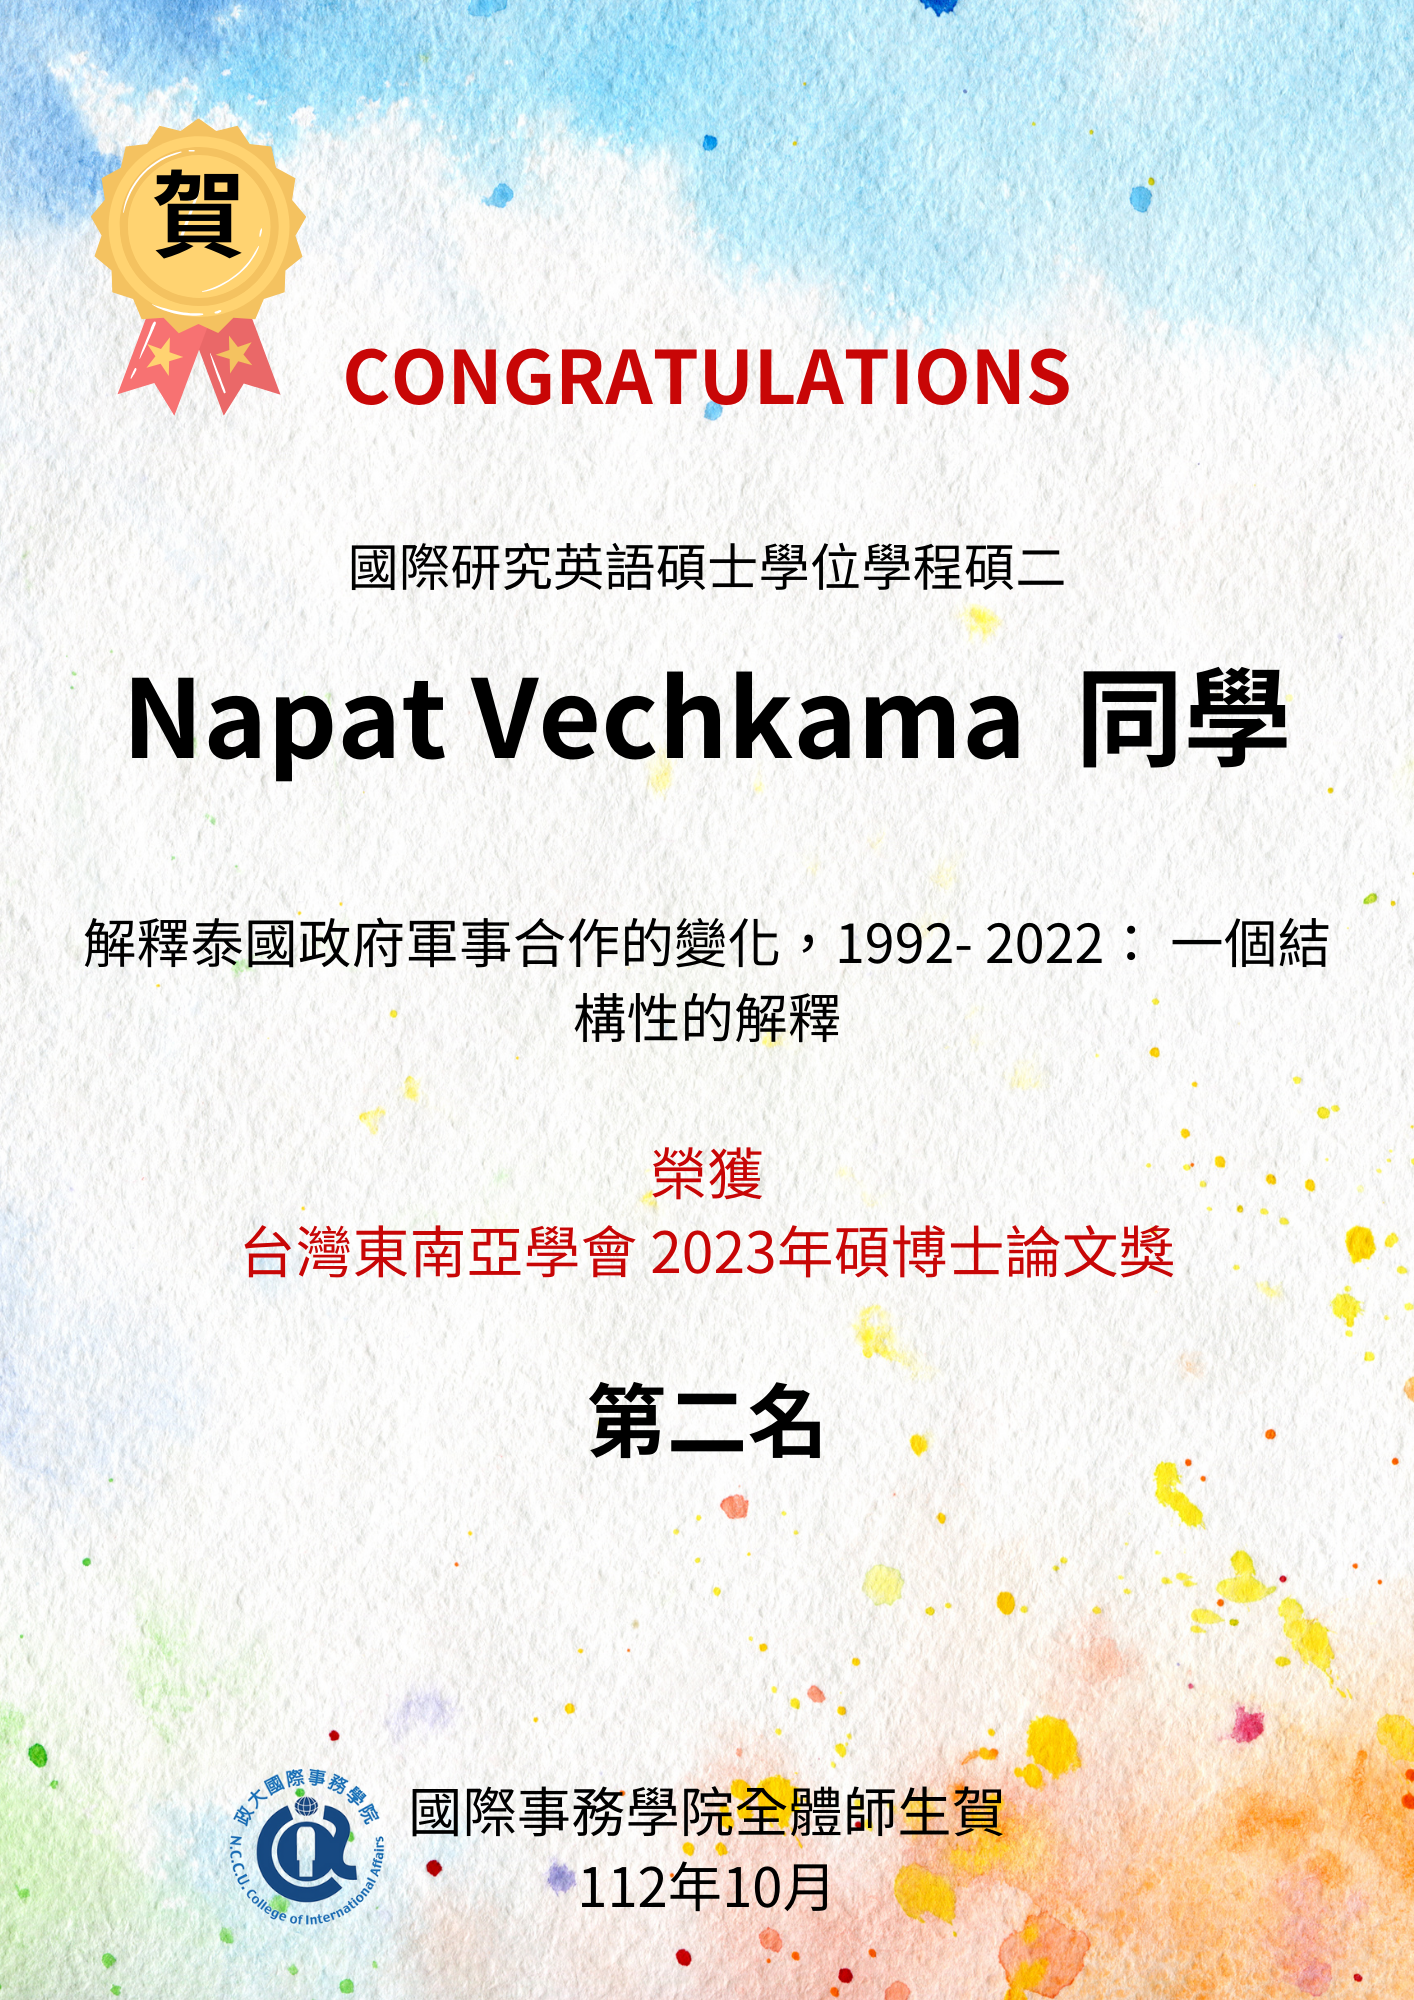 [賀]Napat Vechkama獲 2023年碩博士論文獎